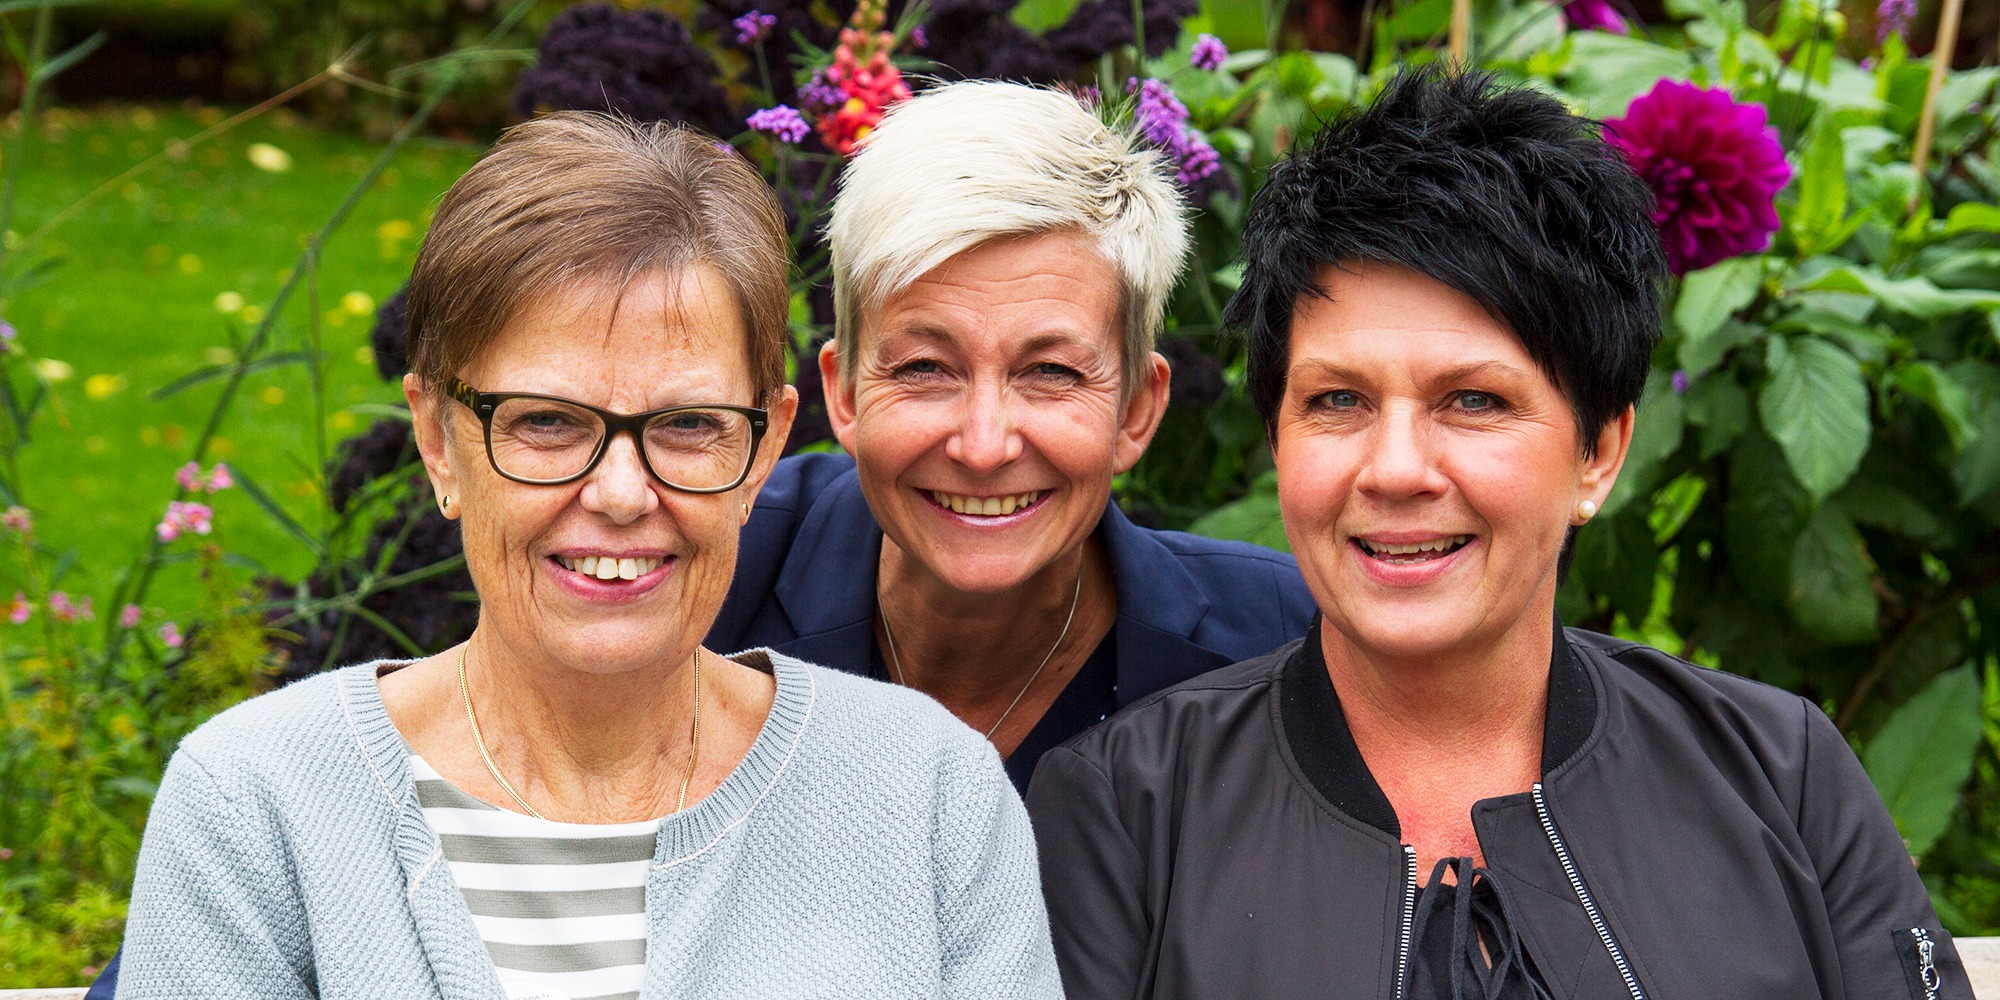 Närbild på tre leende kvinnor, Elisabet Björklund, Marie Niljung och Ingela Persson, i park med blommor i bakgrunden